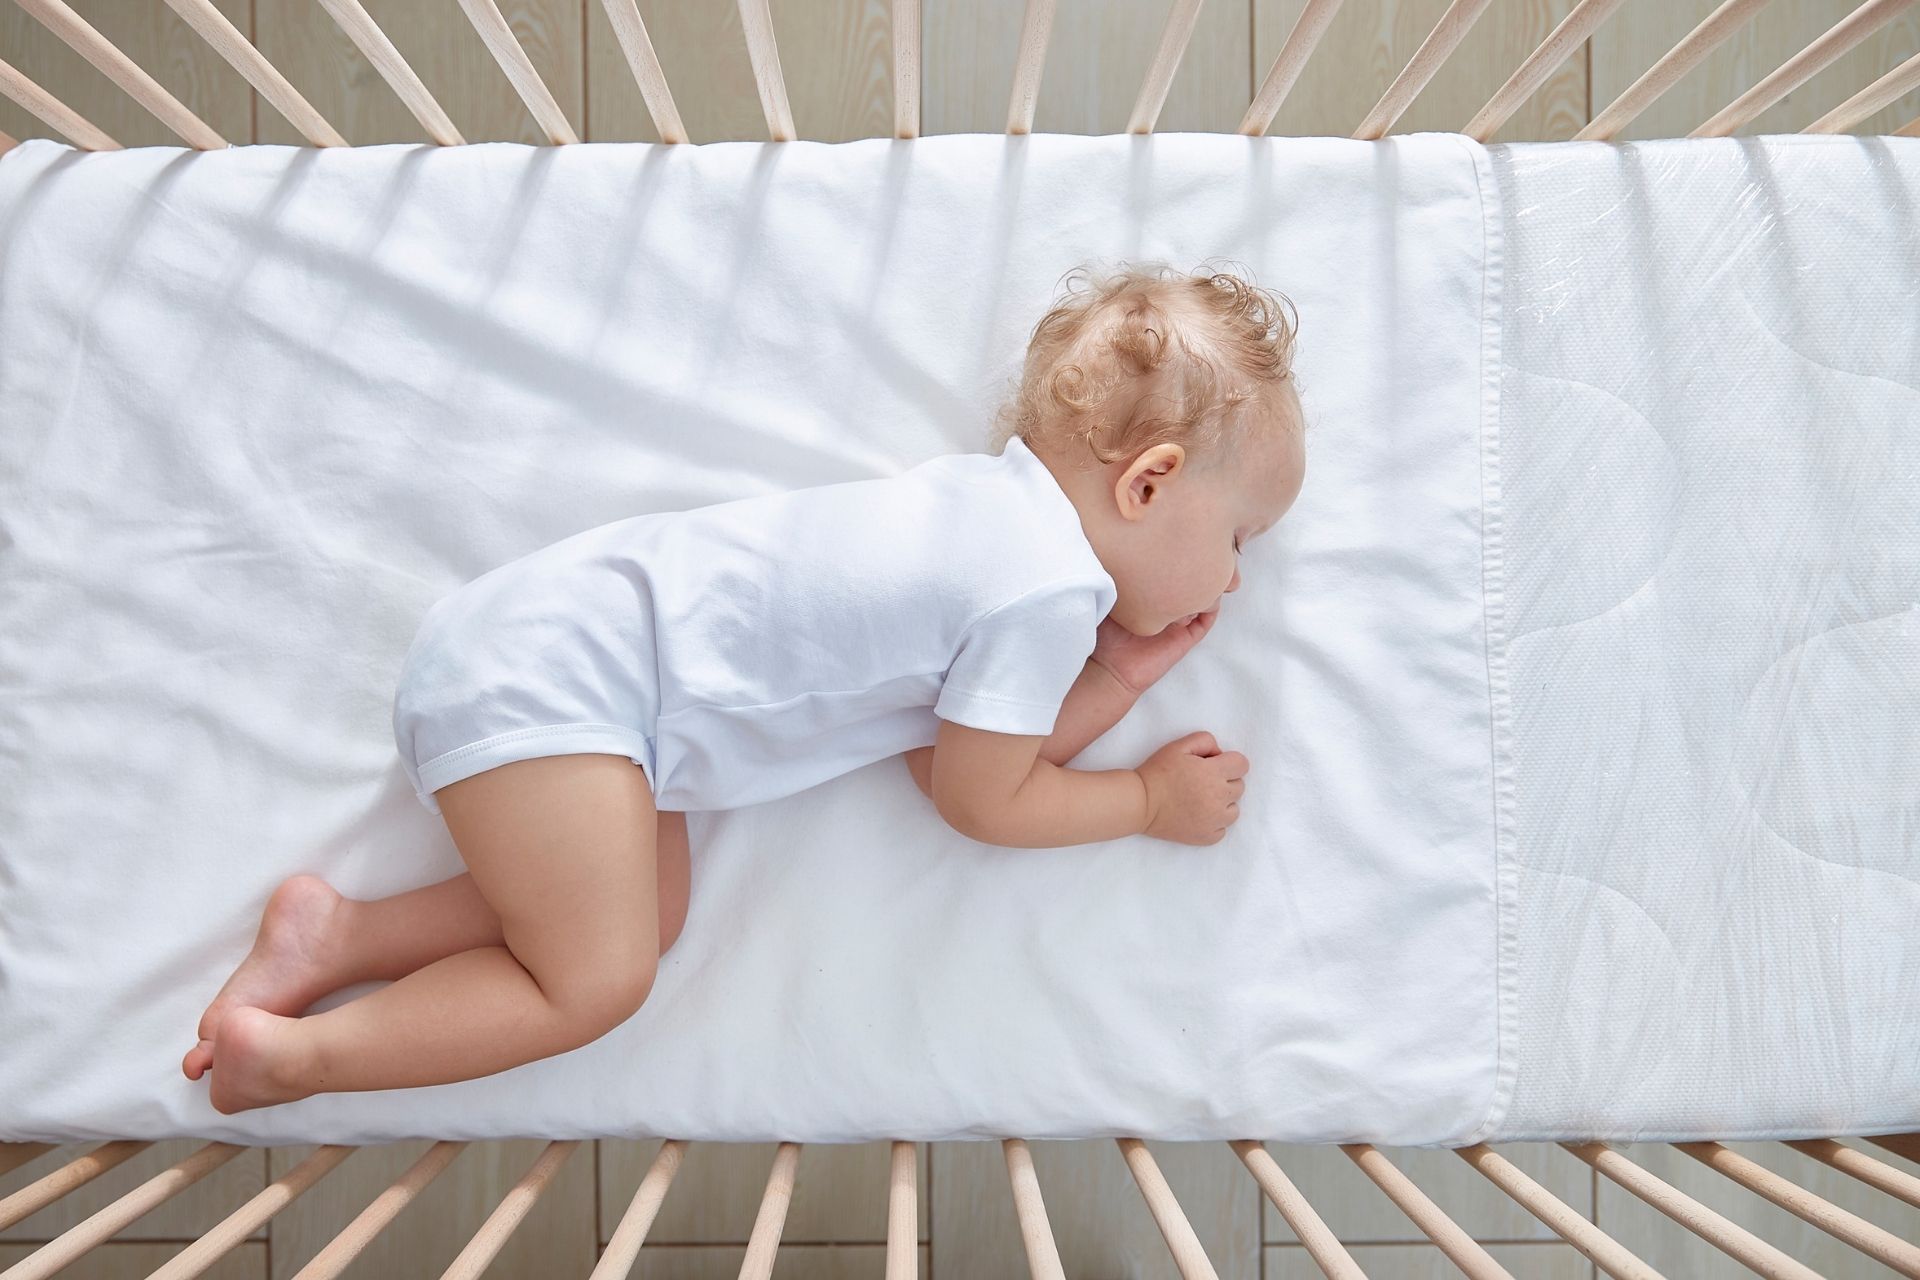 עריסה או מיטת תינוק:  מה עדיף לילד שלכם?